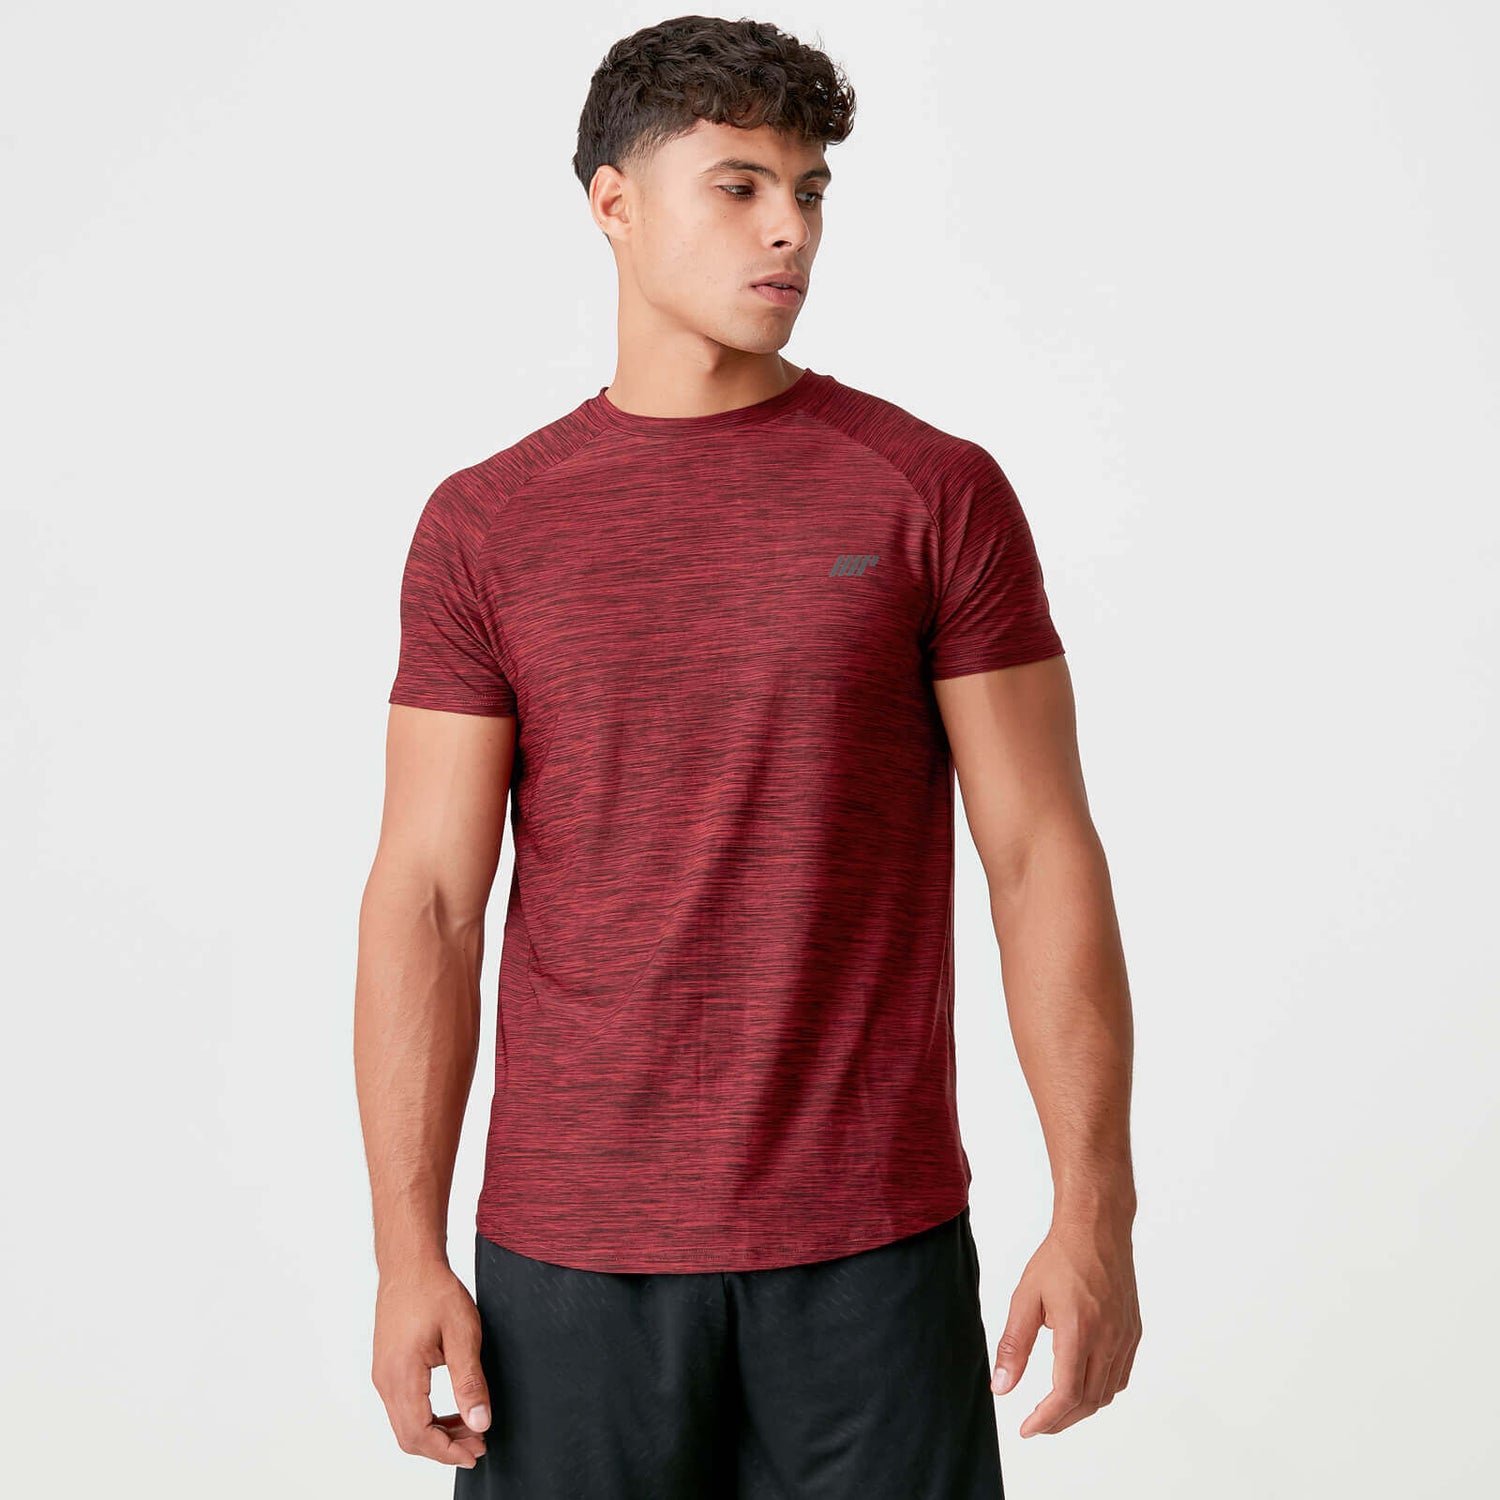 Men's Dry-Tech Sweat-Wicking Gym Shirt, Vermelho